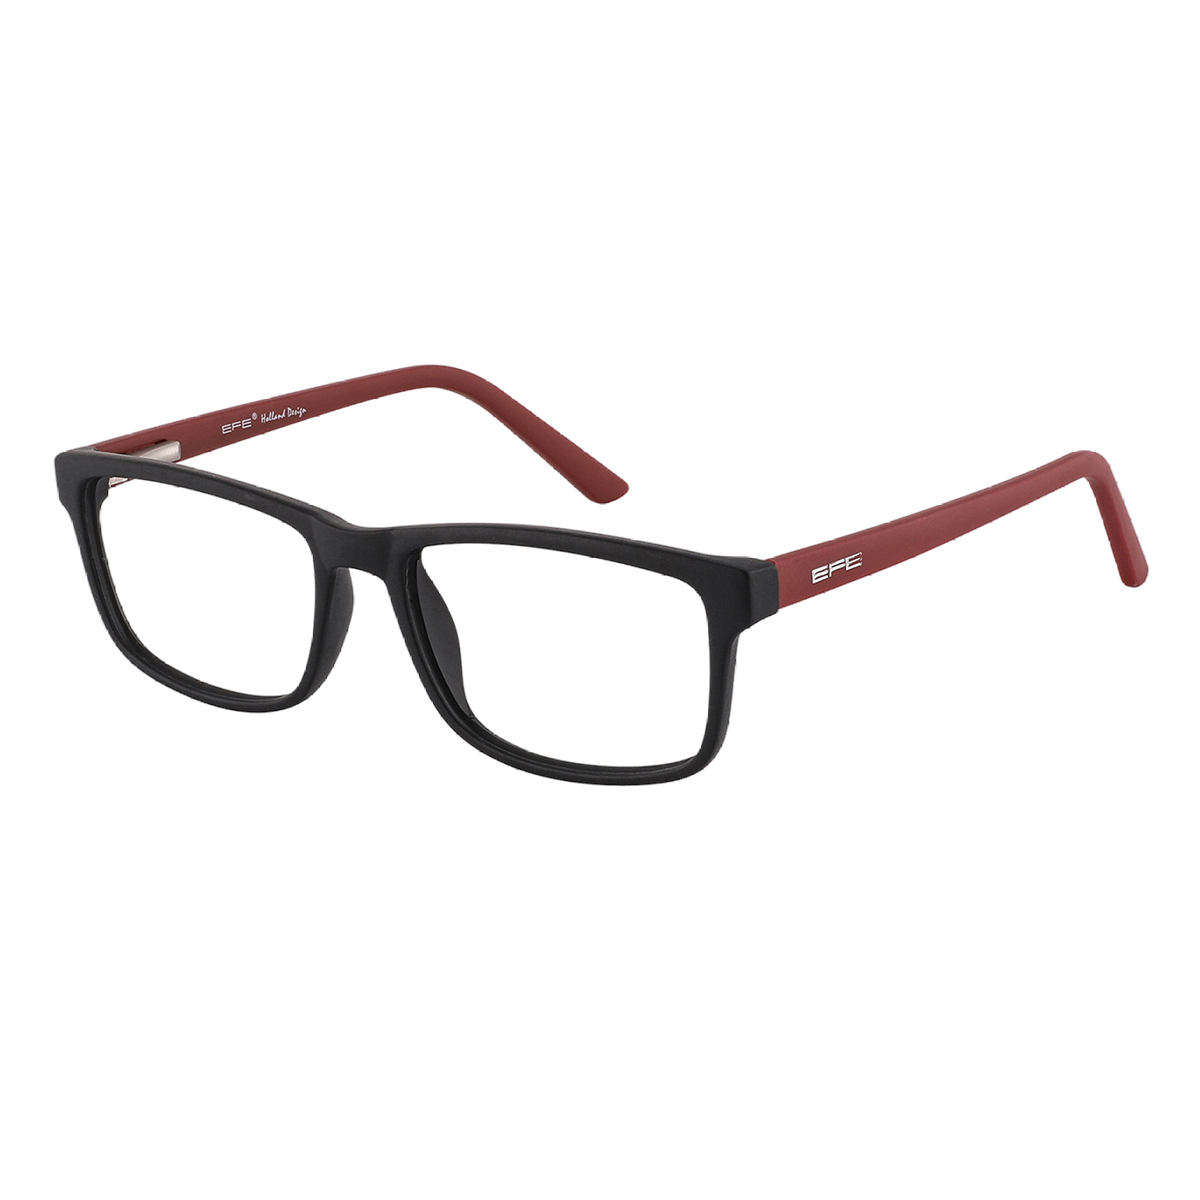 Noricum - Rectangle Black-red Reading Glasses for Men & Women